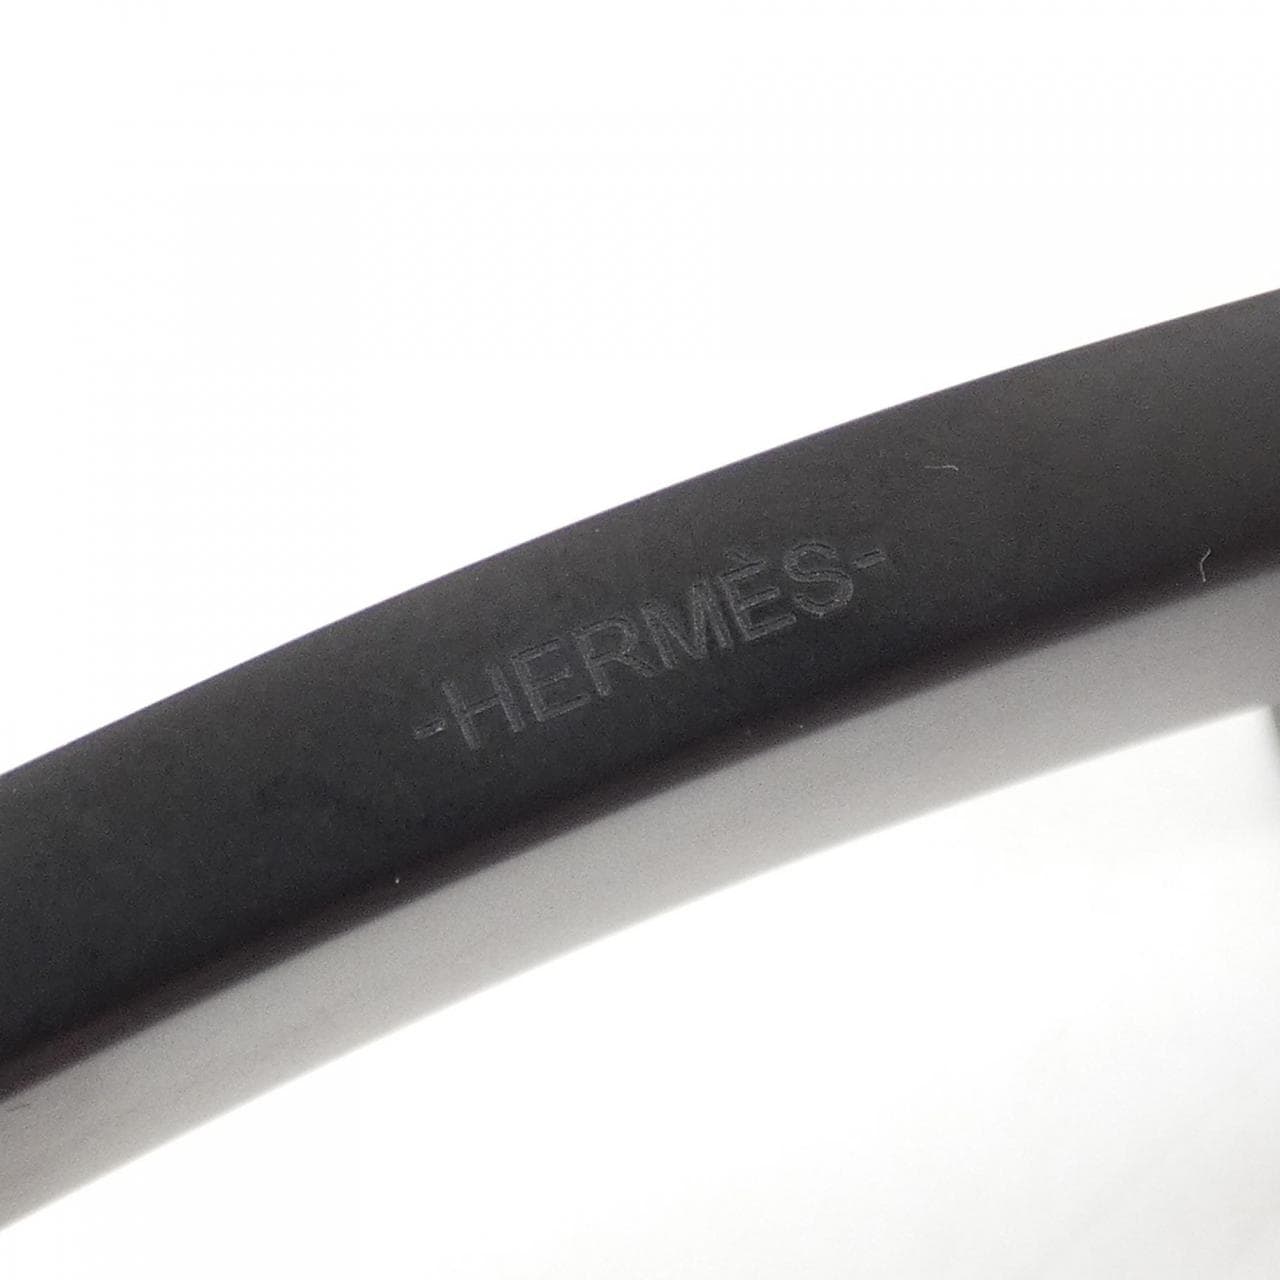 HERMES buckle